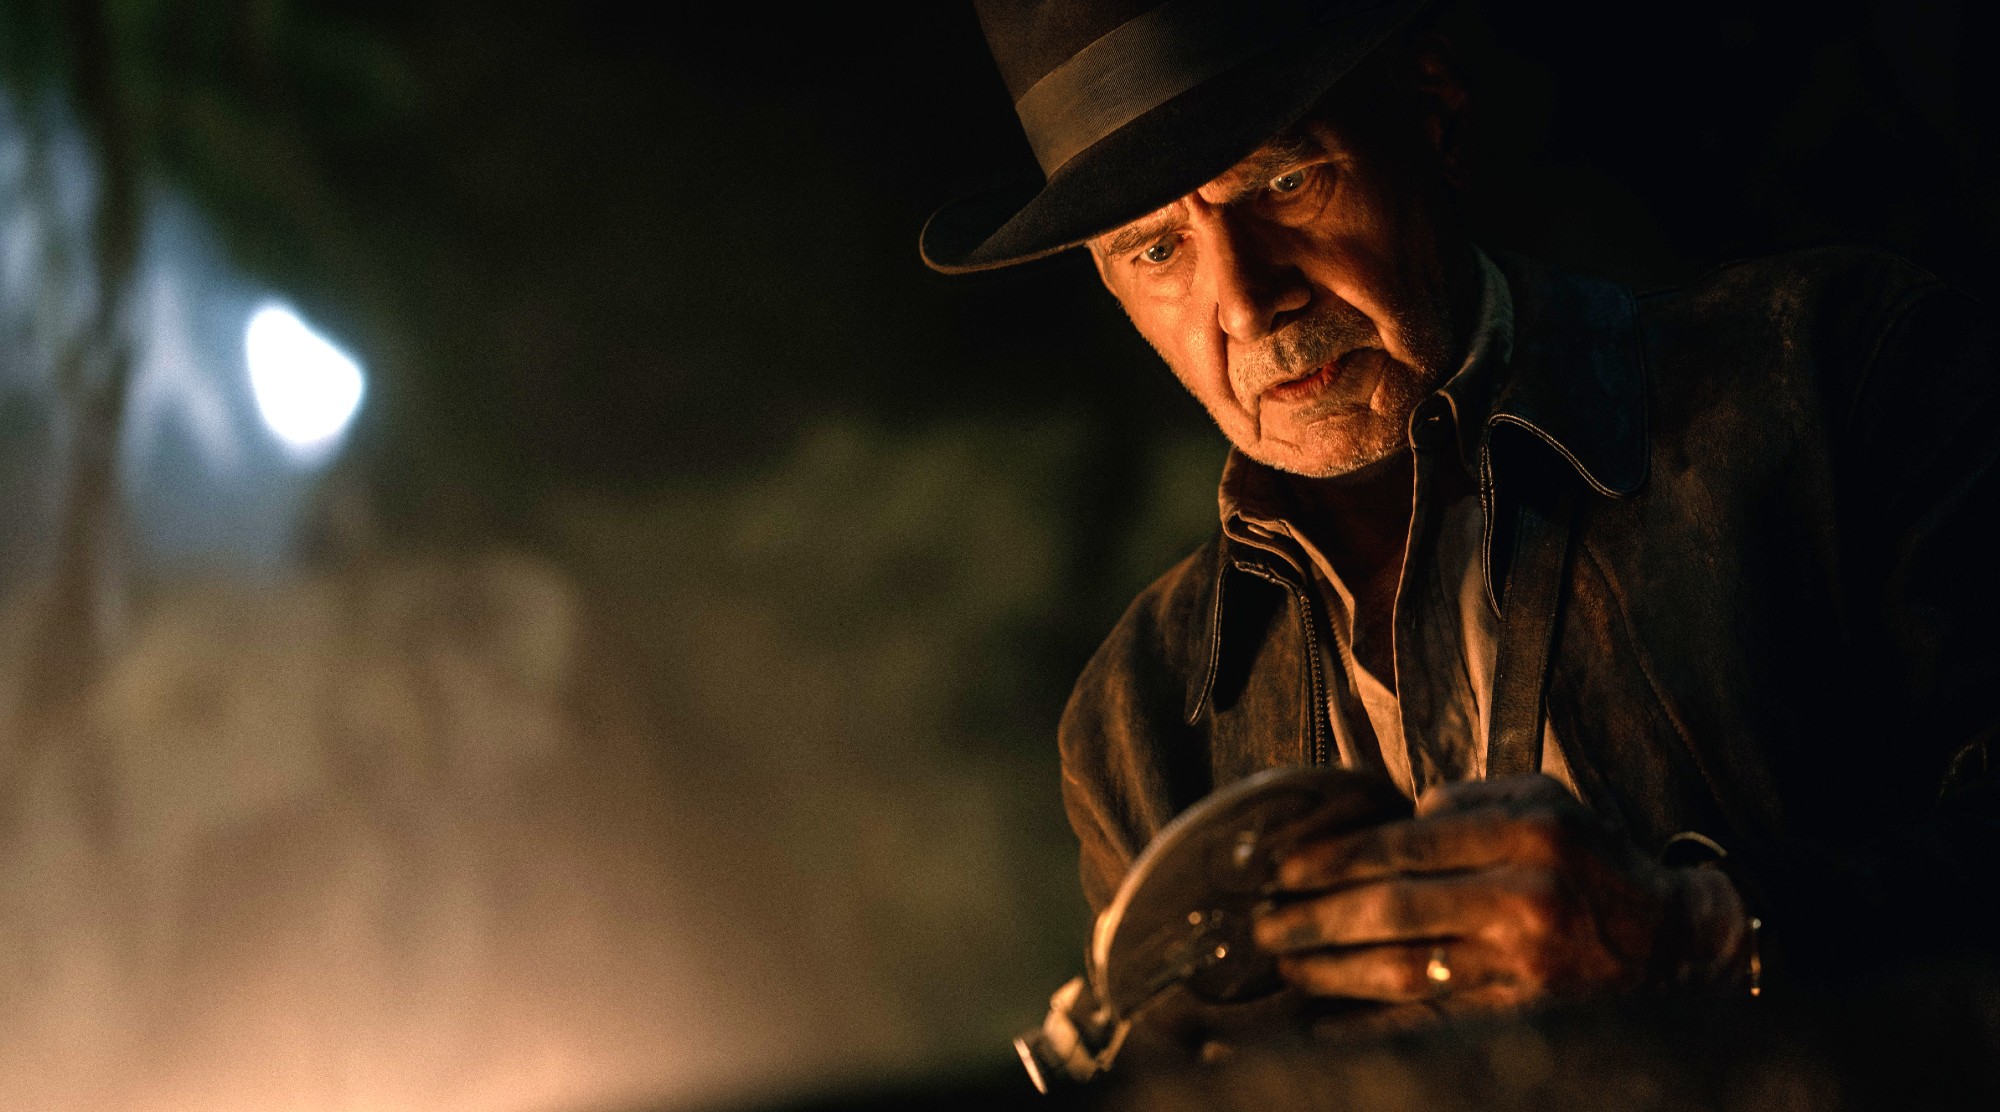 Indiana Jones: Antikythera, Arka oraz fakty i fikcje związane z filmami